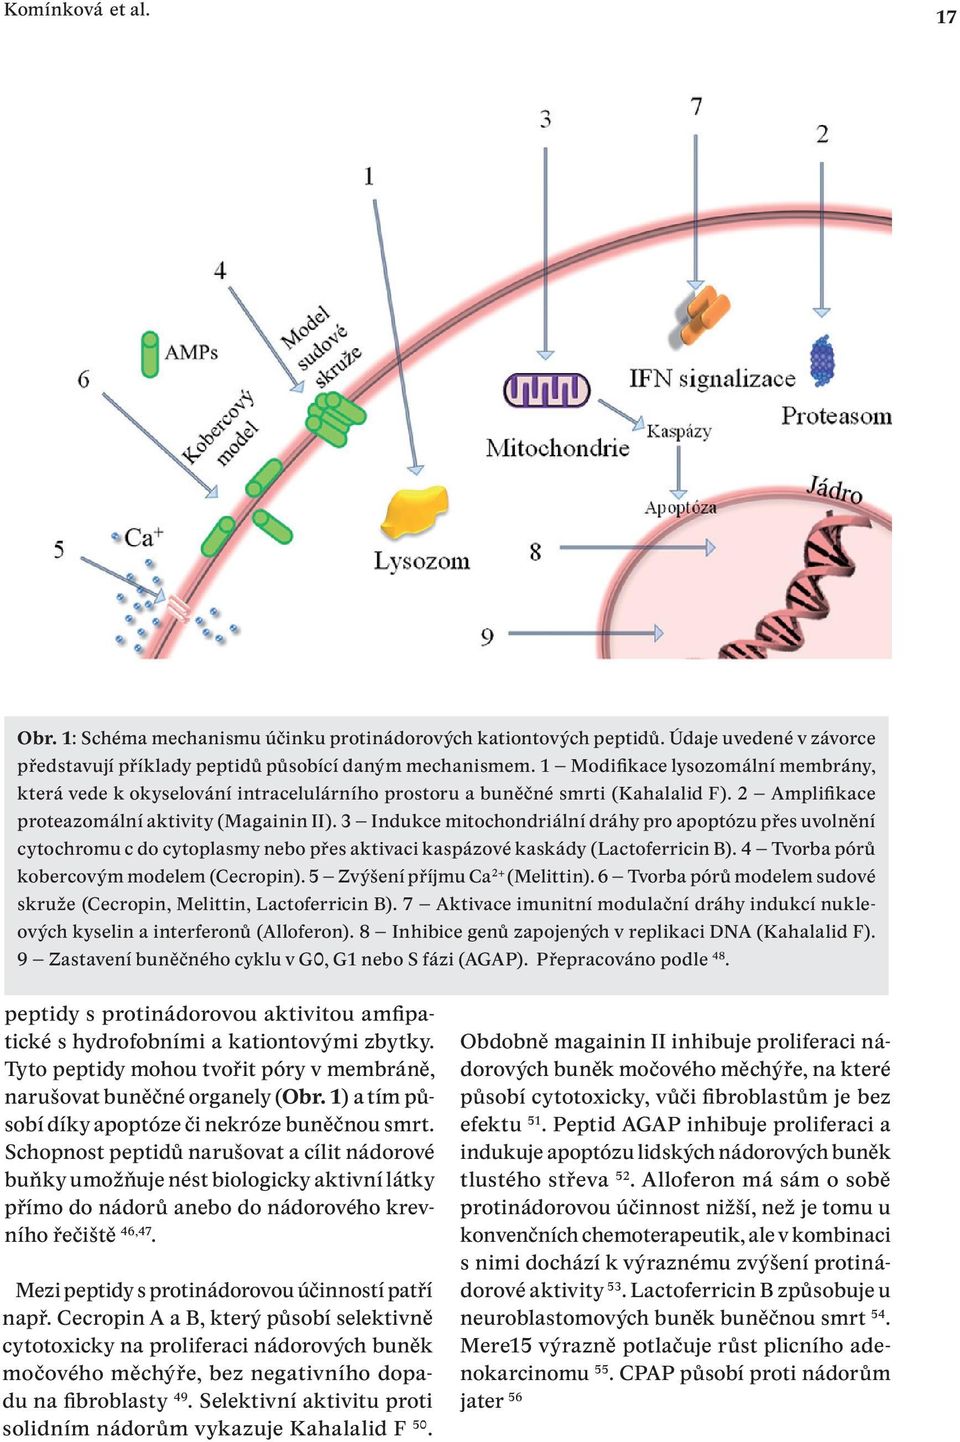 3 Indukce mitochondriální dráhy pro apoptózu přes uvolnění cytochromu c do cytoplasmy nebo přes aktivaci kaspázové kaskády (Lactoferricin B). 4 Tvorba pórů kobercovým modelem (Cecropin).